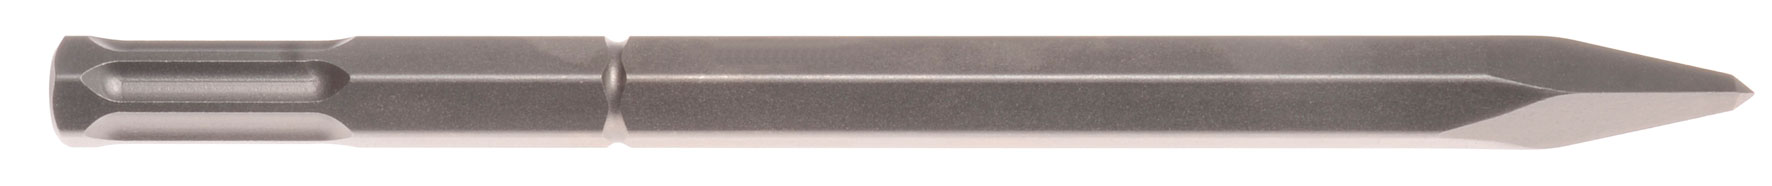 Spitzmeißel Schaft 22 mm 6-kant mit 6 Nuten